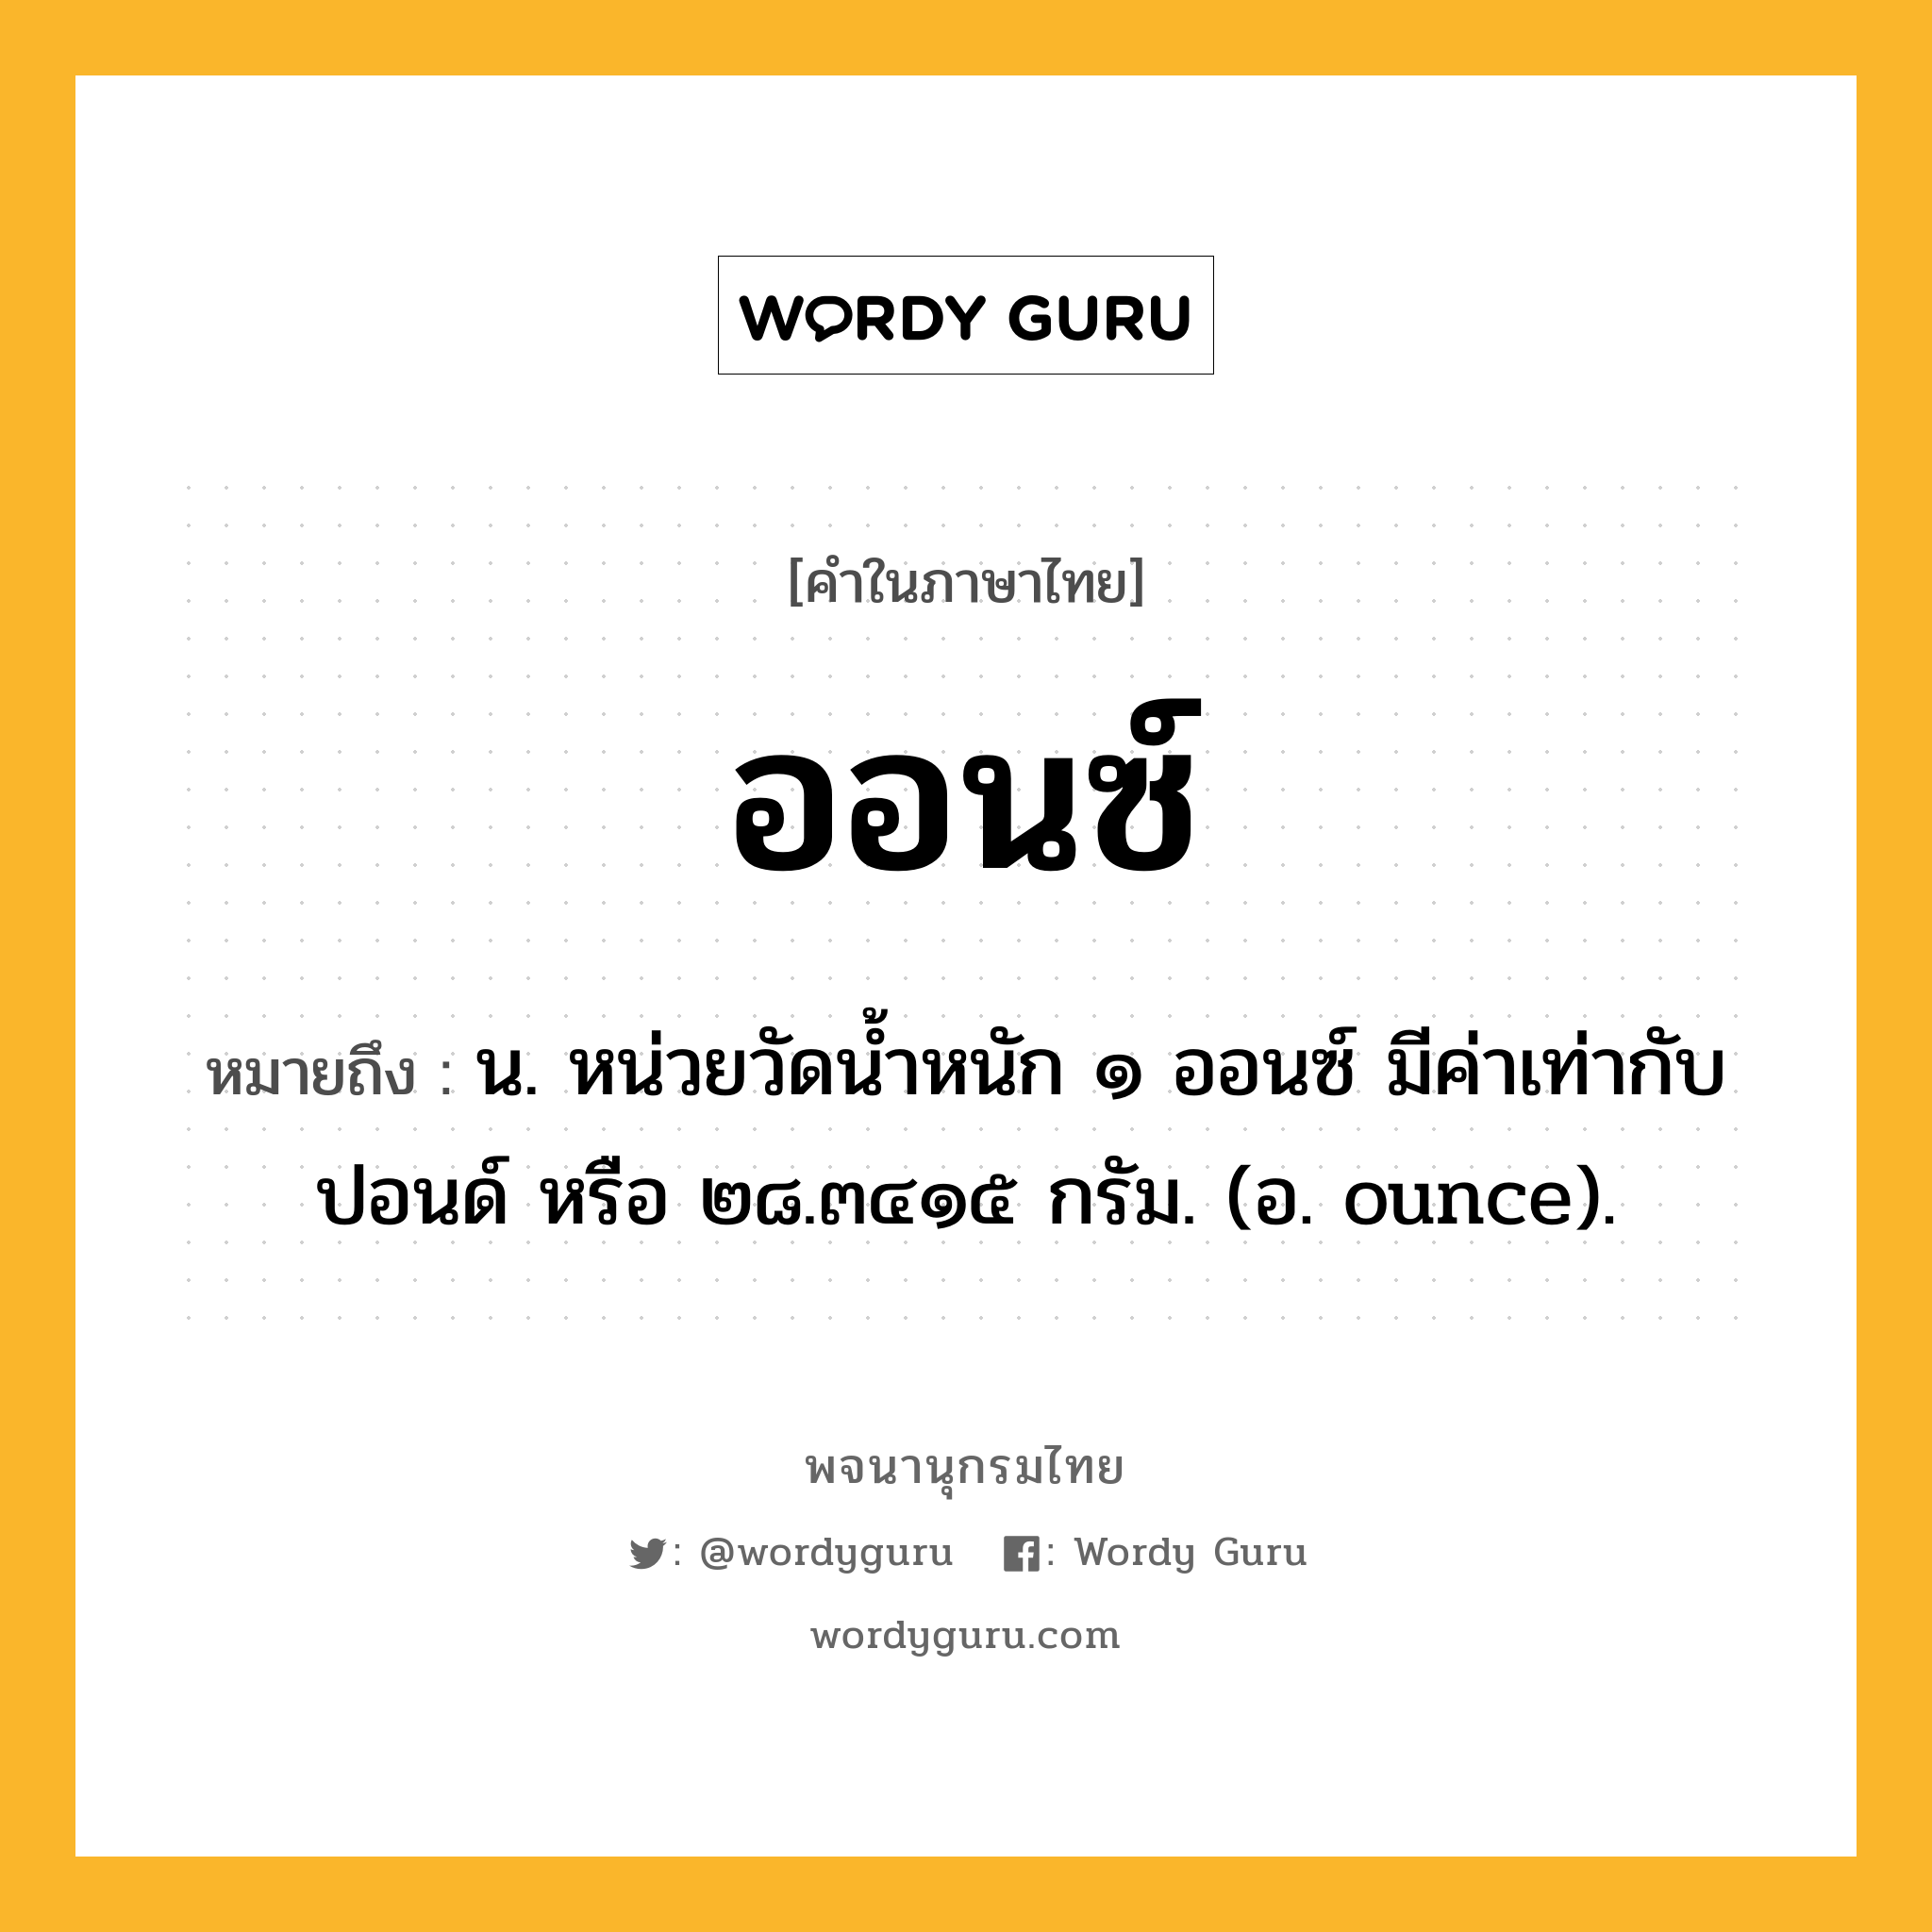 ออนซ์ หมายถึงอะไร?, คำในภาษาไทย ออนซ์ หมายถึง น. หน่วยวัดนํ้าหนัก ๑ ออนซ์ มีค่าเท่ากับ ปอนด์ หรือ ๒๘.๓๔๑๕ กรัม. (อ. ounce).